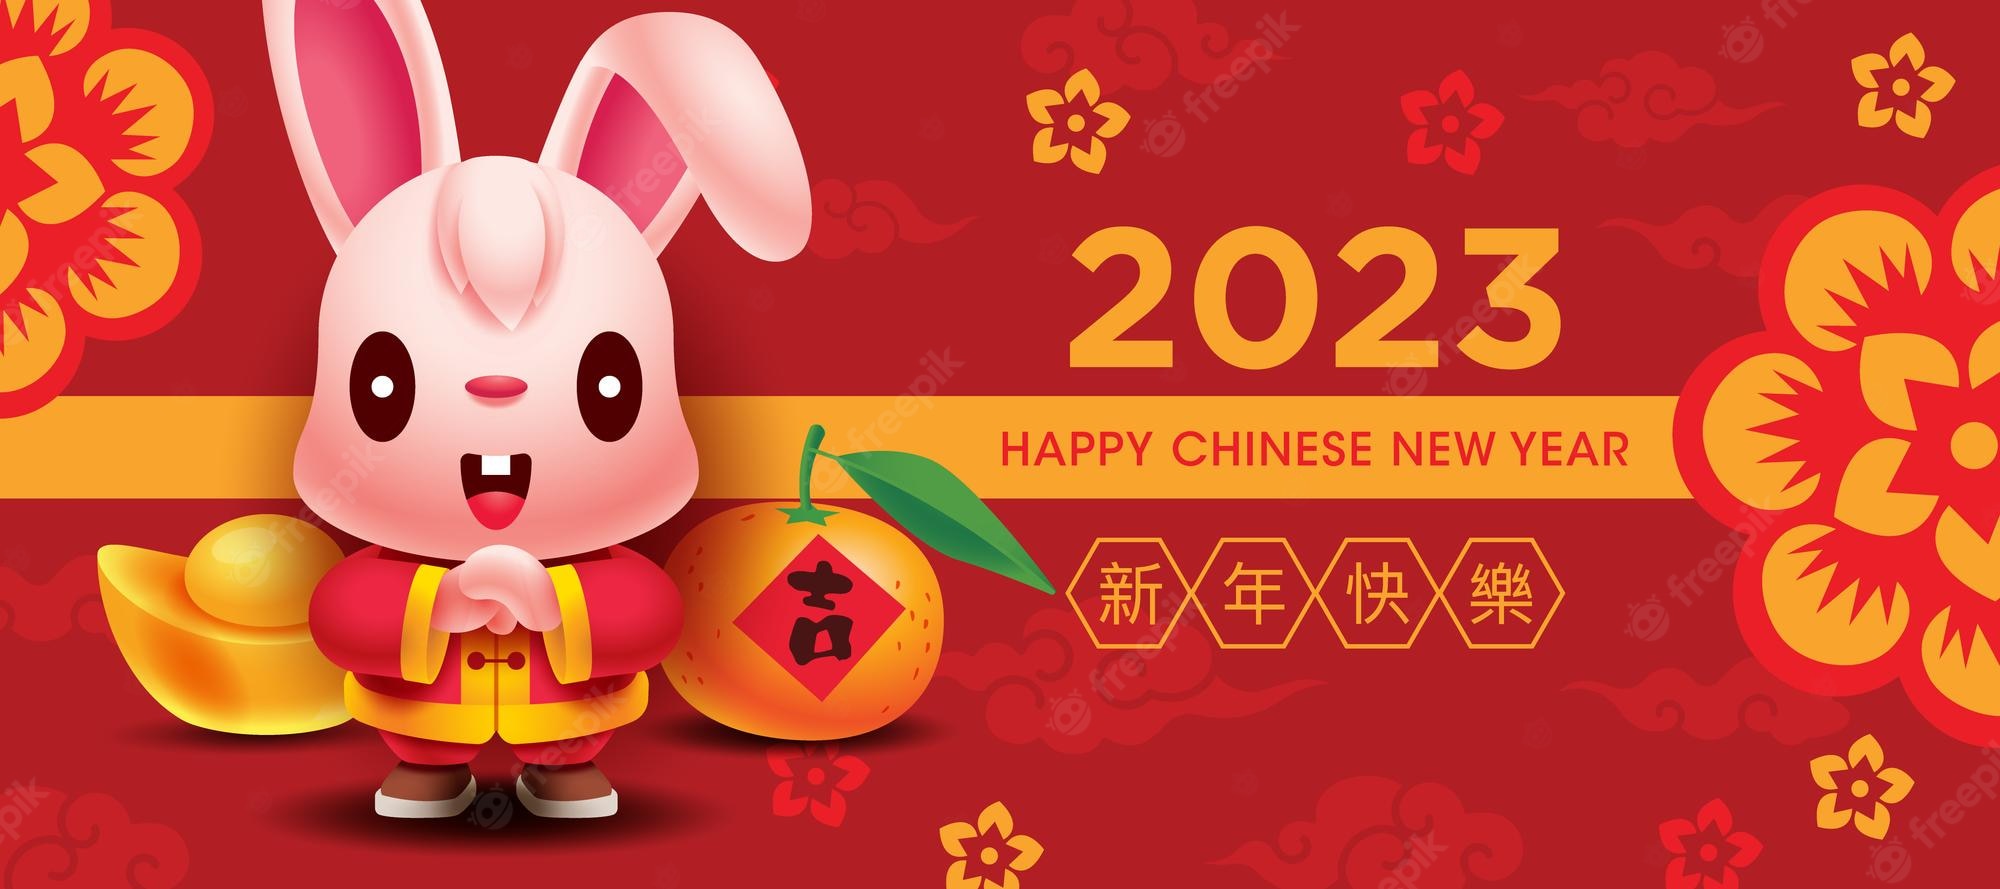 2023-الصينية-السنة الجديدة-لطيف-أرنب-تحية-لافتة-مع-الذهب-اليوسفي-البرتقالي-الأحمر-الخلفية_438266-587